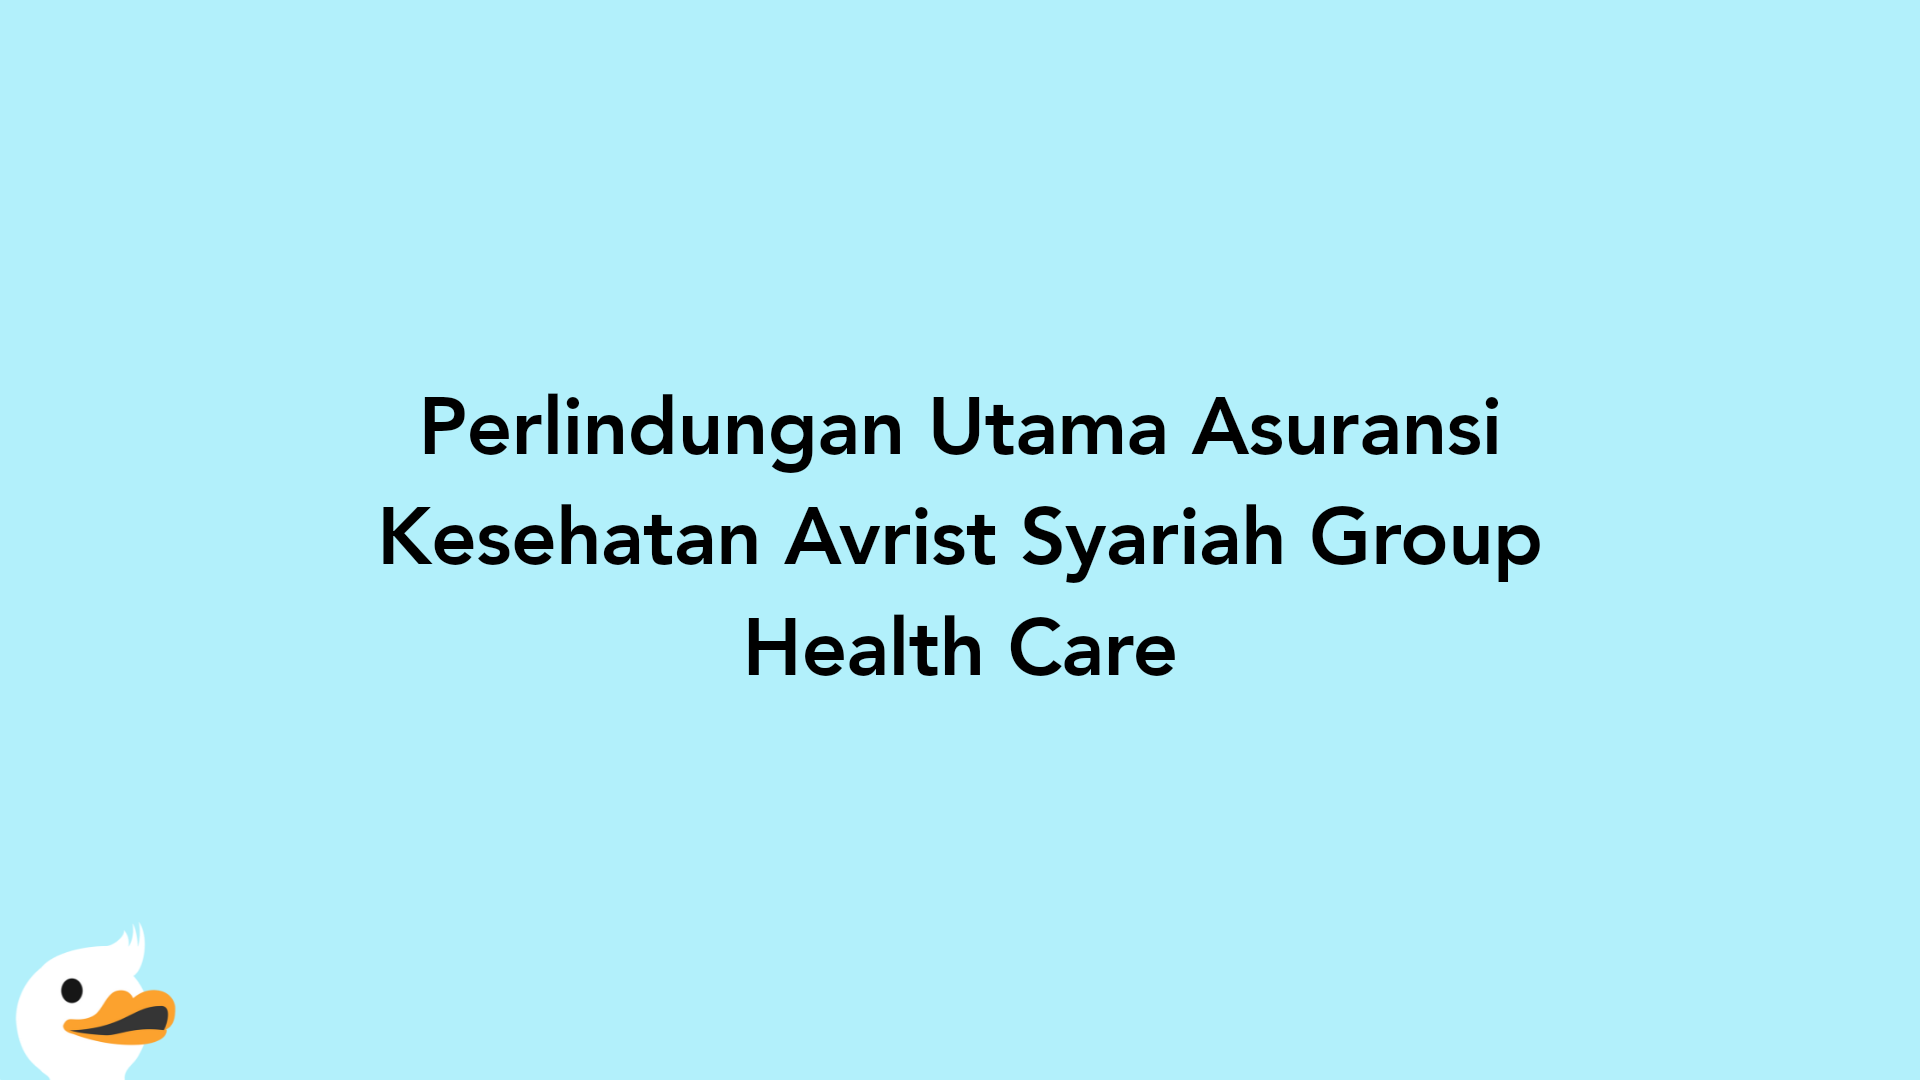 Perlindungan Utama Asuransi Kesehatan Avrist Syariah Group Health Care